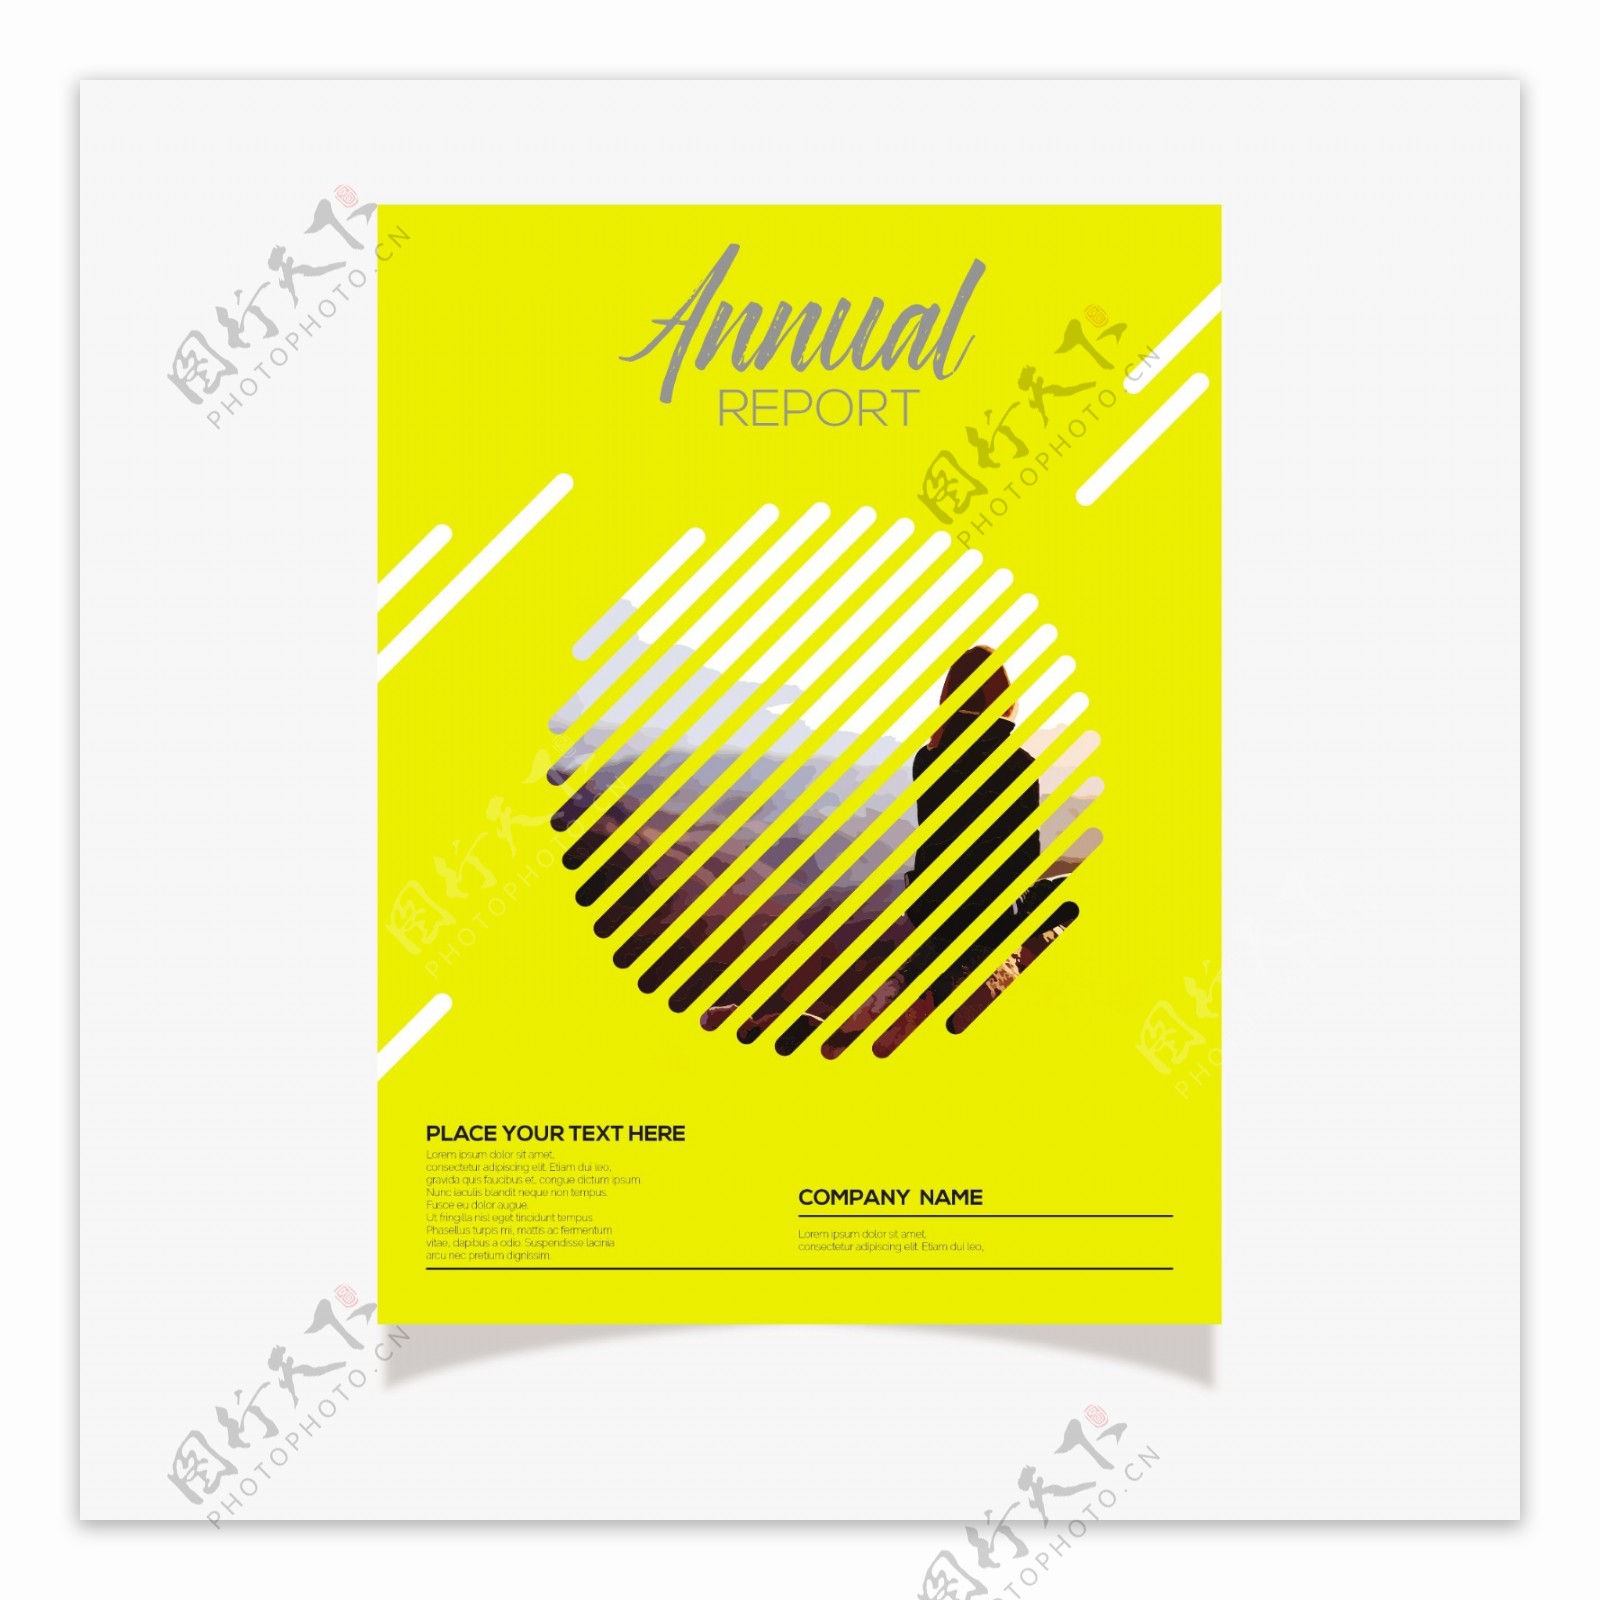 现代抽象图案黄色背景年报设计模板